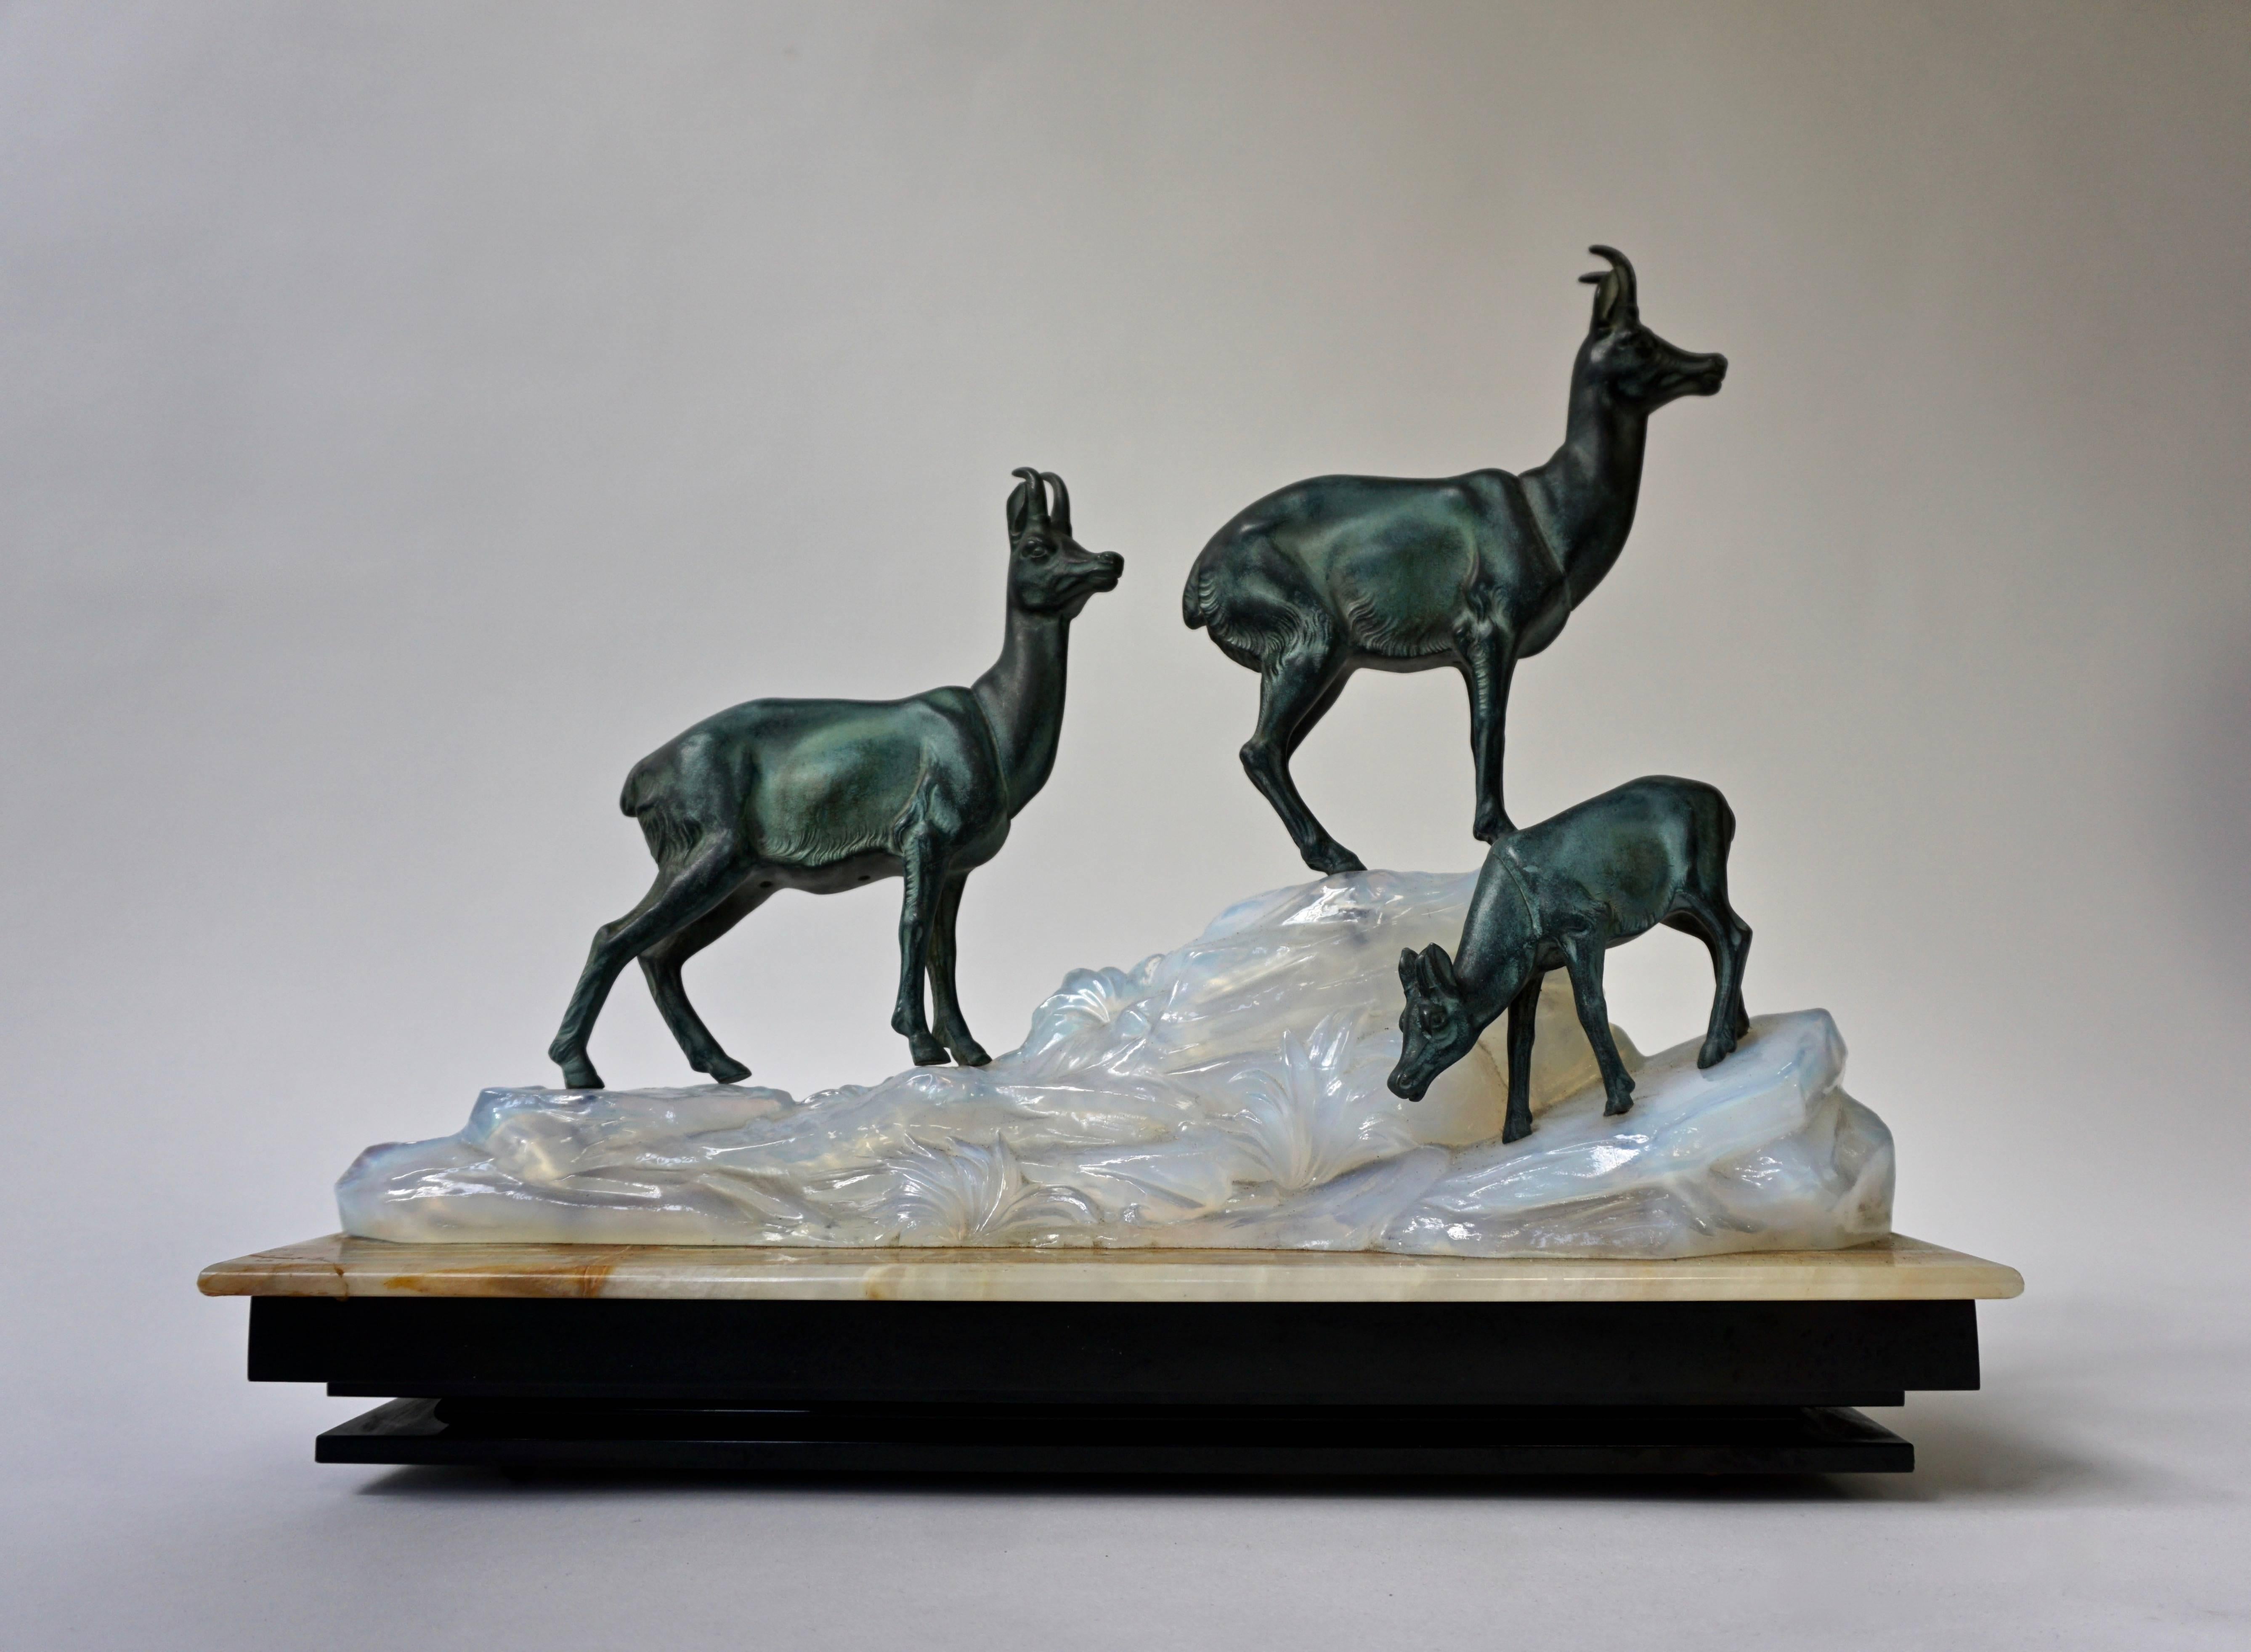 Eine Art-Deco-Skulptur mit drei Hirschen auf einem Marmorsockel.
Maße: Breite:43 cm.
Tiefe: 15 cm.
Höhe: 37 cm.
Gewicht: 10 kg.